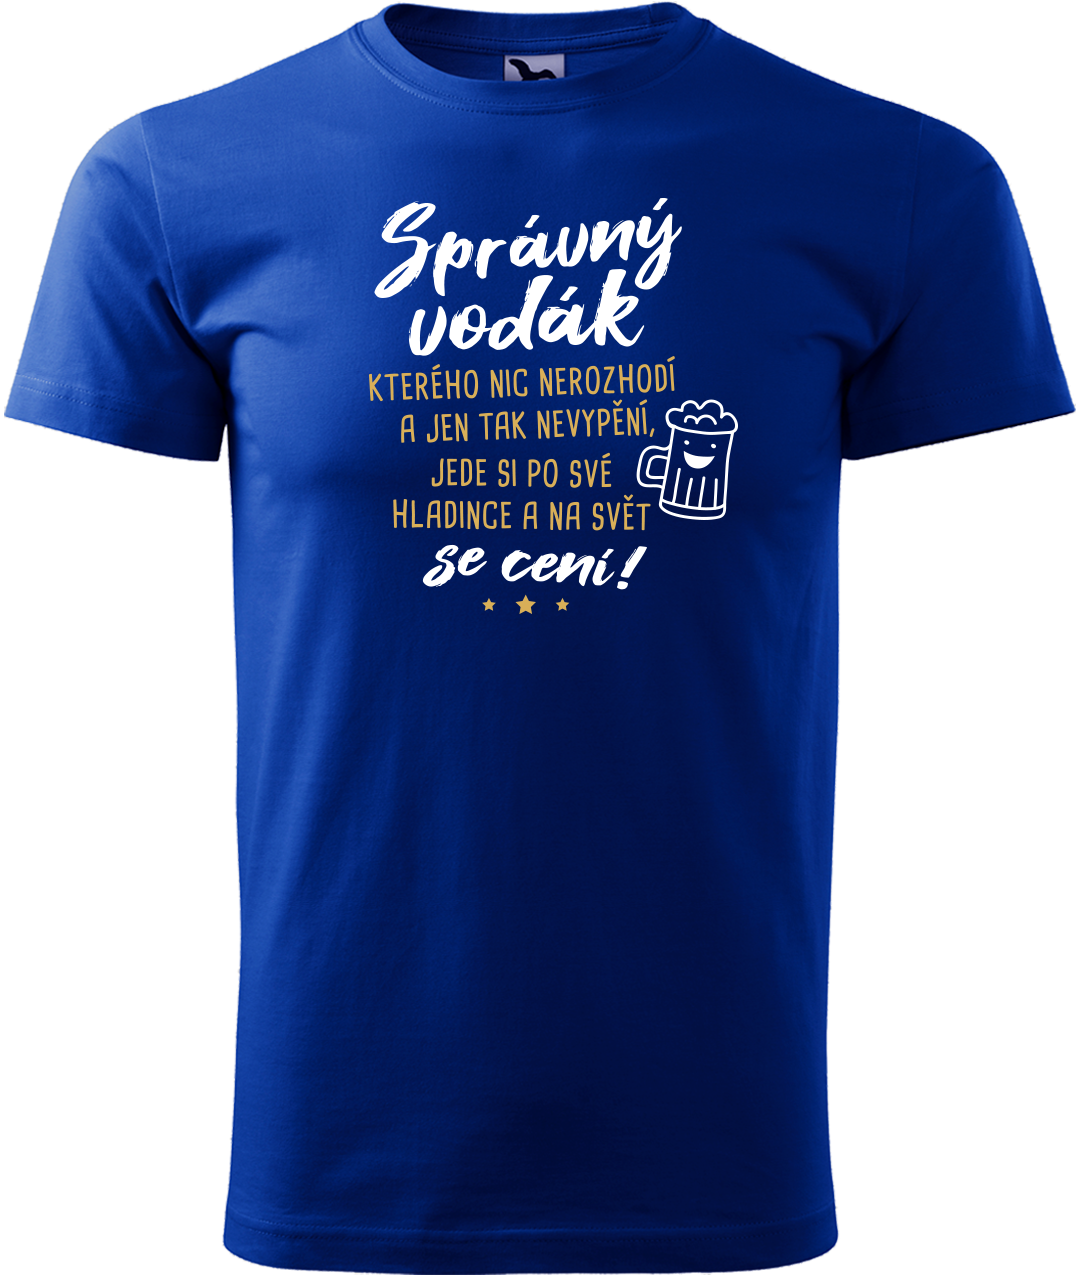 Pánské vodácké tričko - Správný vodák se cení Velikost: L, Barva: Královská modrá (05)